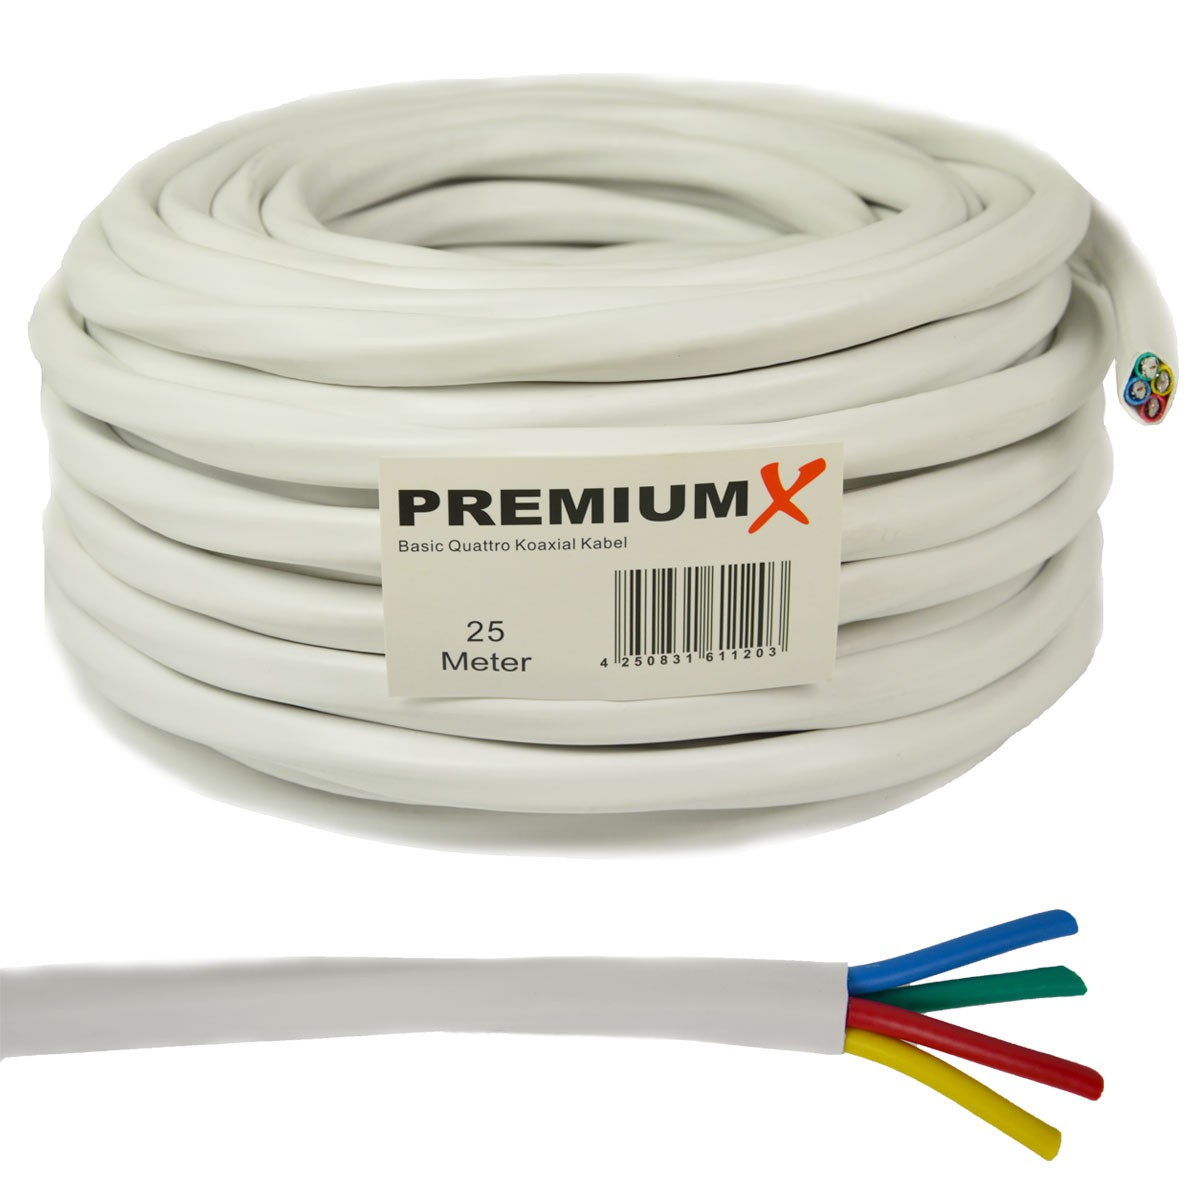 PREMIUMX 25m Antennenkabel Weiß Koaxial geschirmt 2-Fach Kabel Basic Quattro SAT 90dB